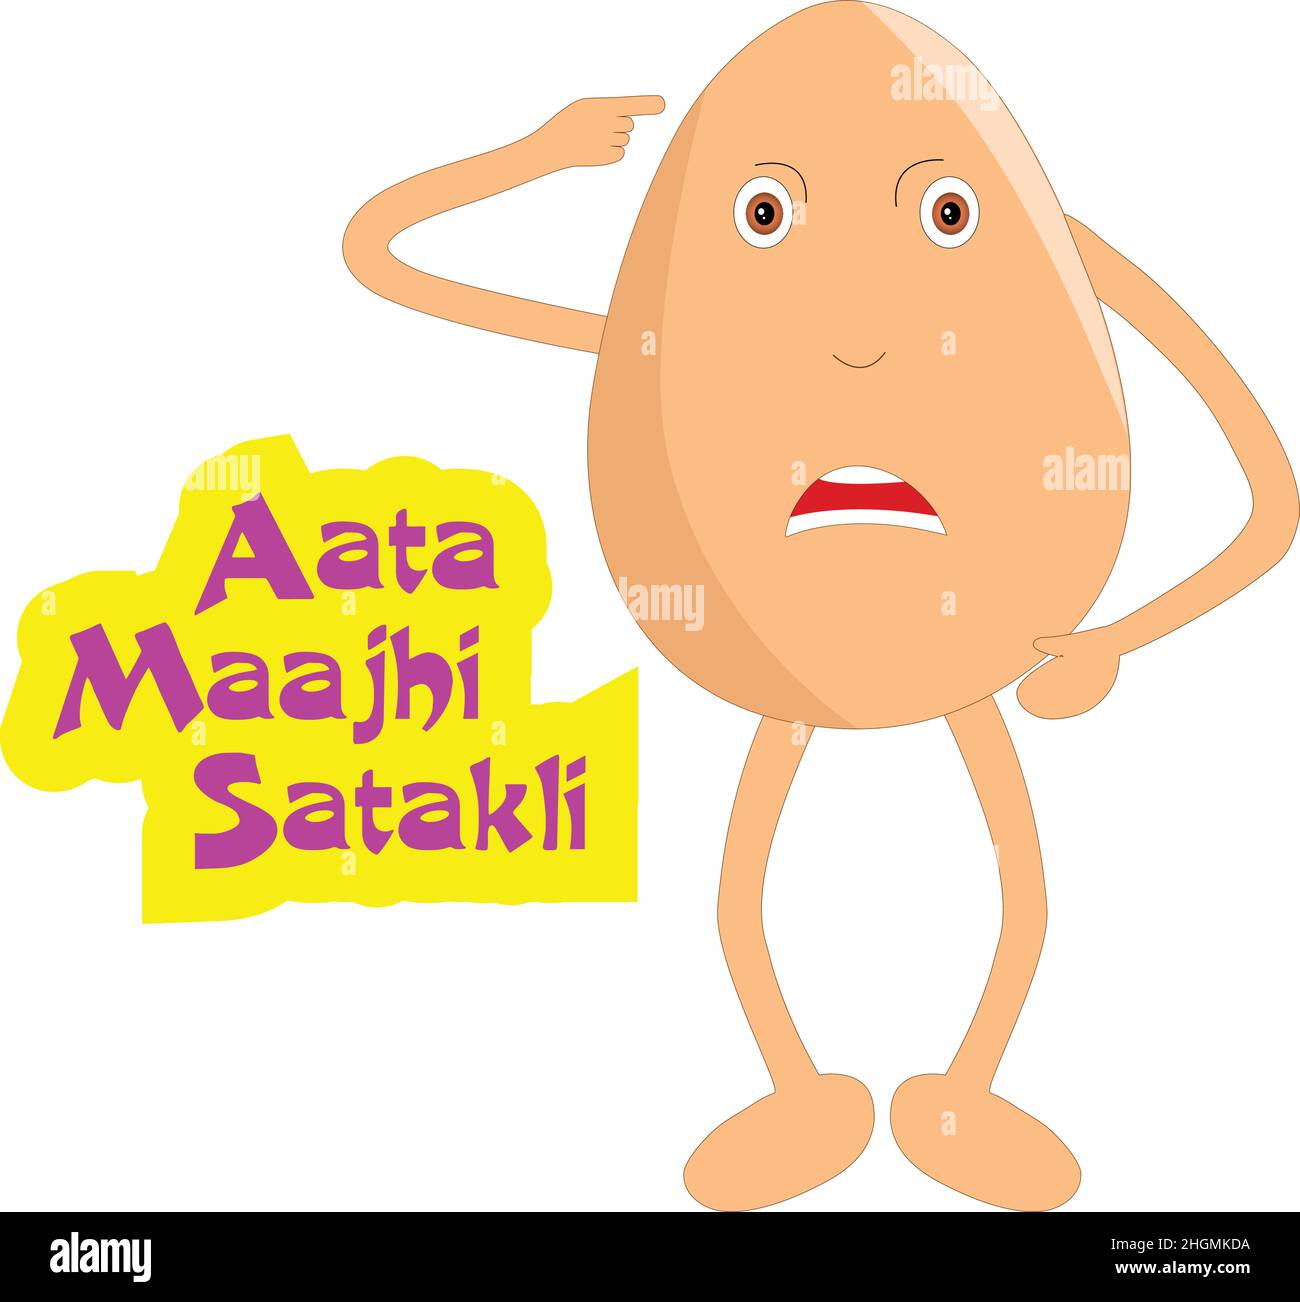 Dibujos animados de huevos con temática india - huevo enojado diciendo que estoy enojado. Ilustración vectorial. Ilustración del Vector